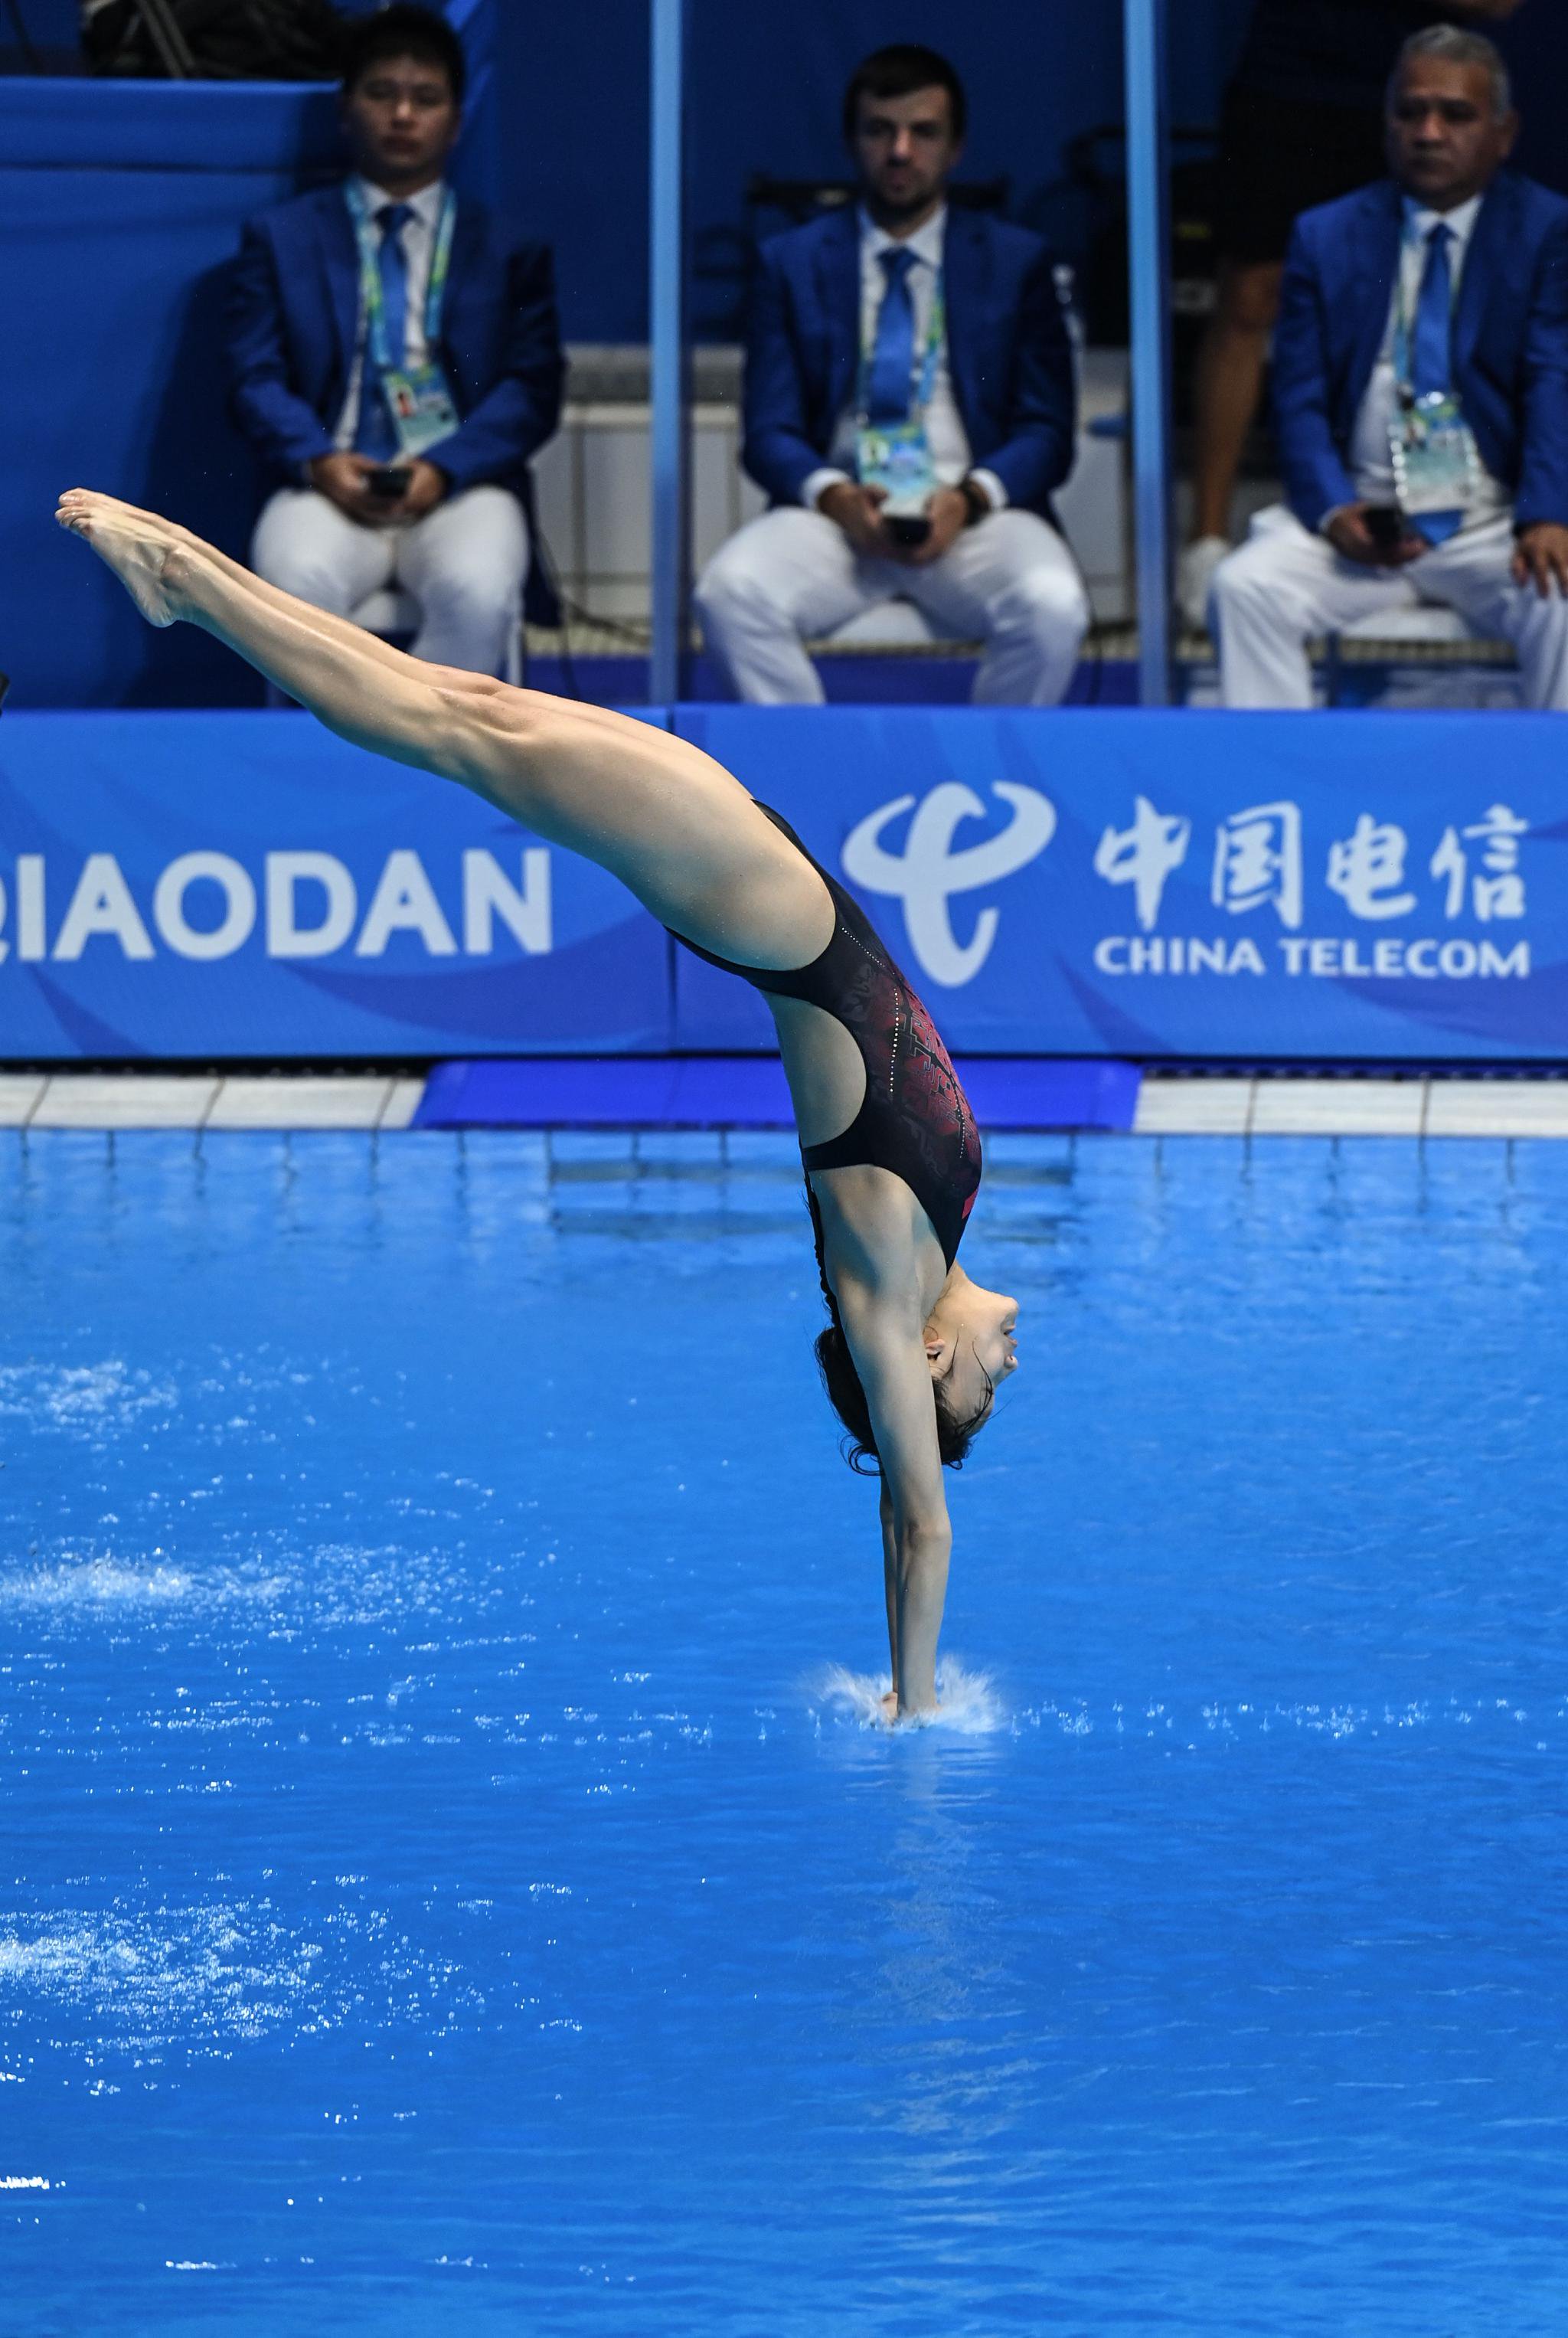 张家齐/掌敏洁组合夺得成都大运会跳水女子双人10米台金牌 - 封面新闻